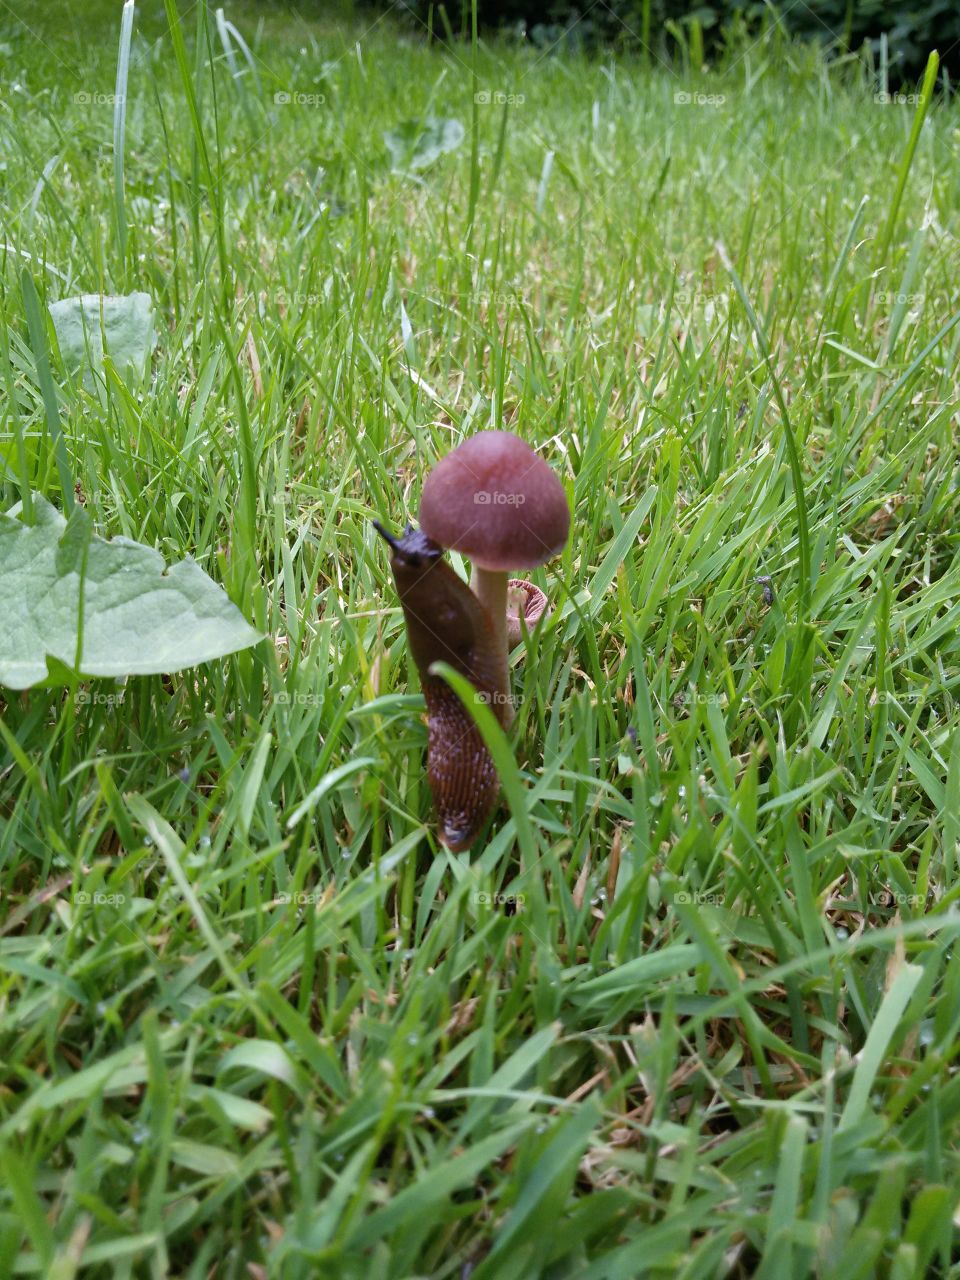 slug / mushroom